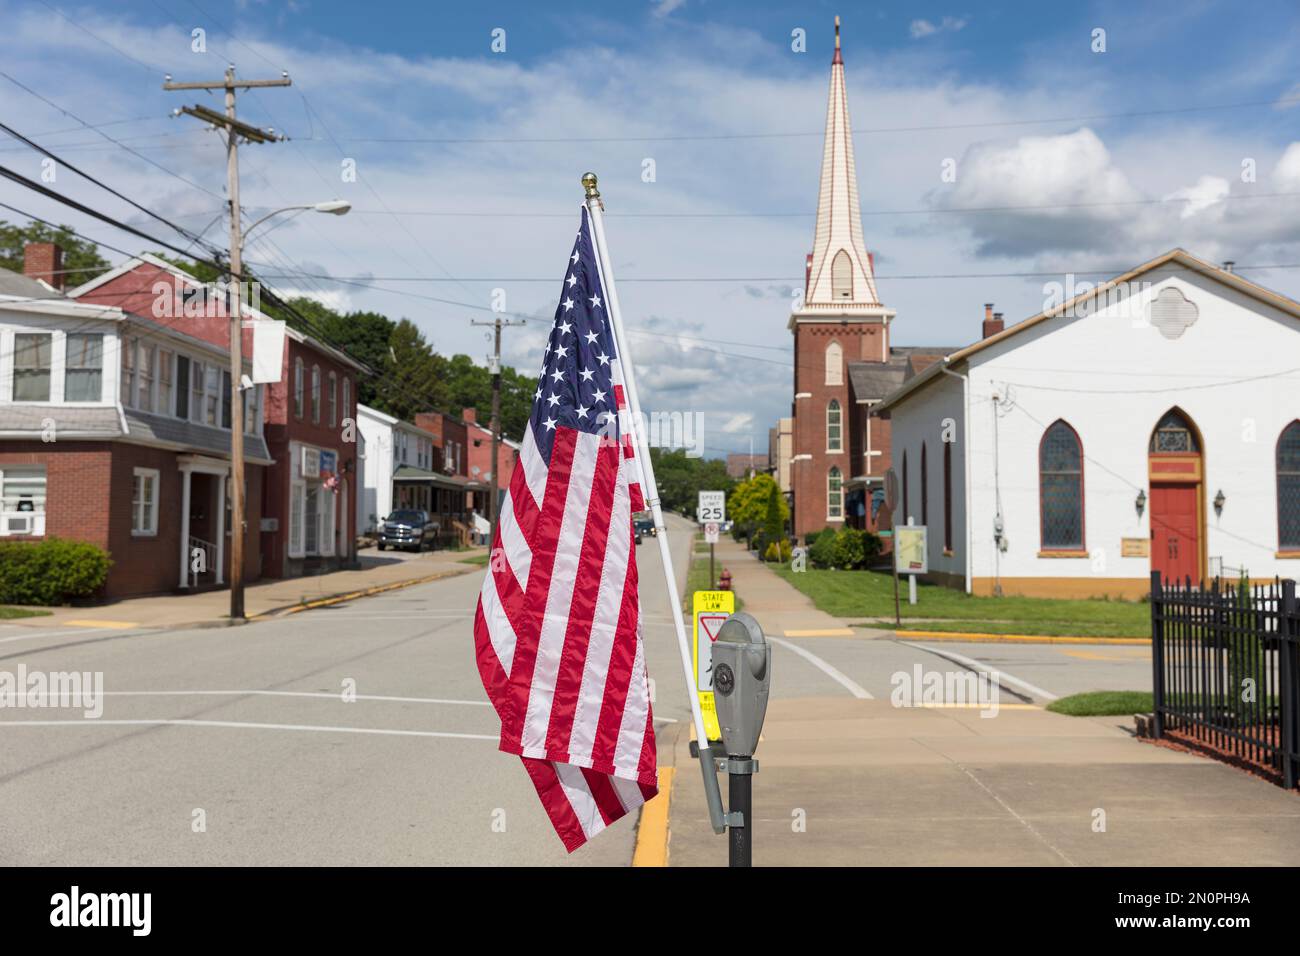 Bandera americana volando en una calle principal tranquila con casas y una iglesia. Foto de stock